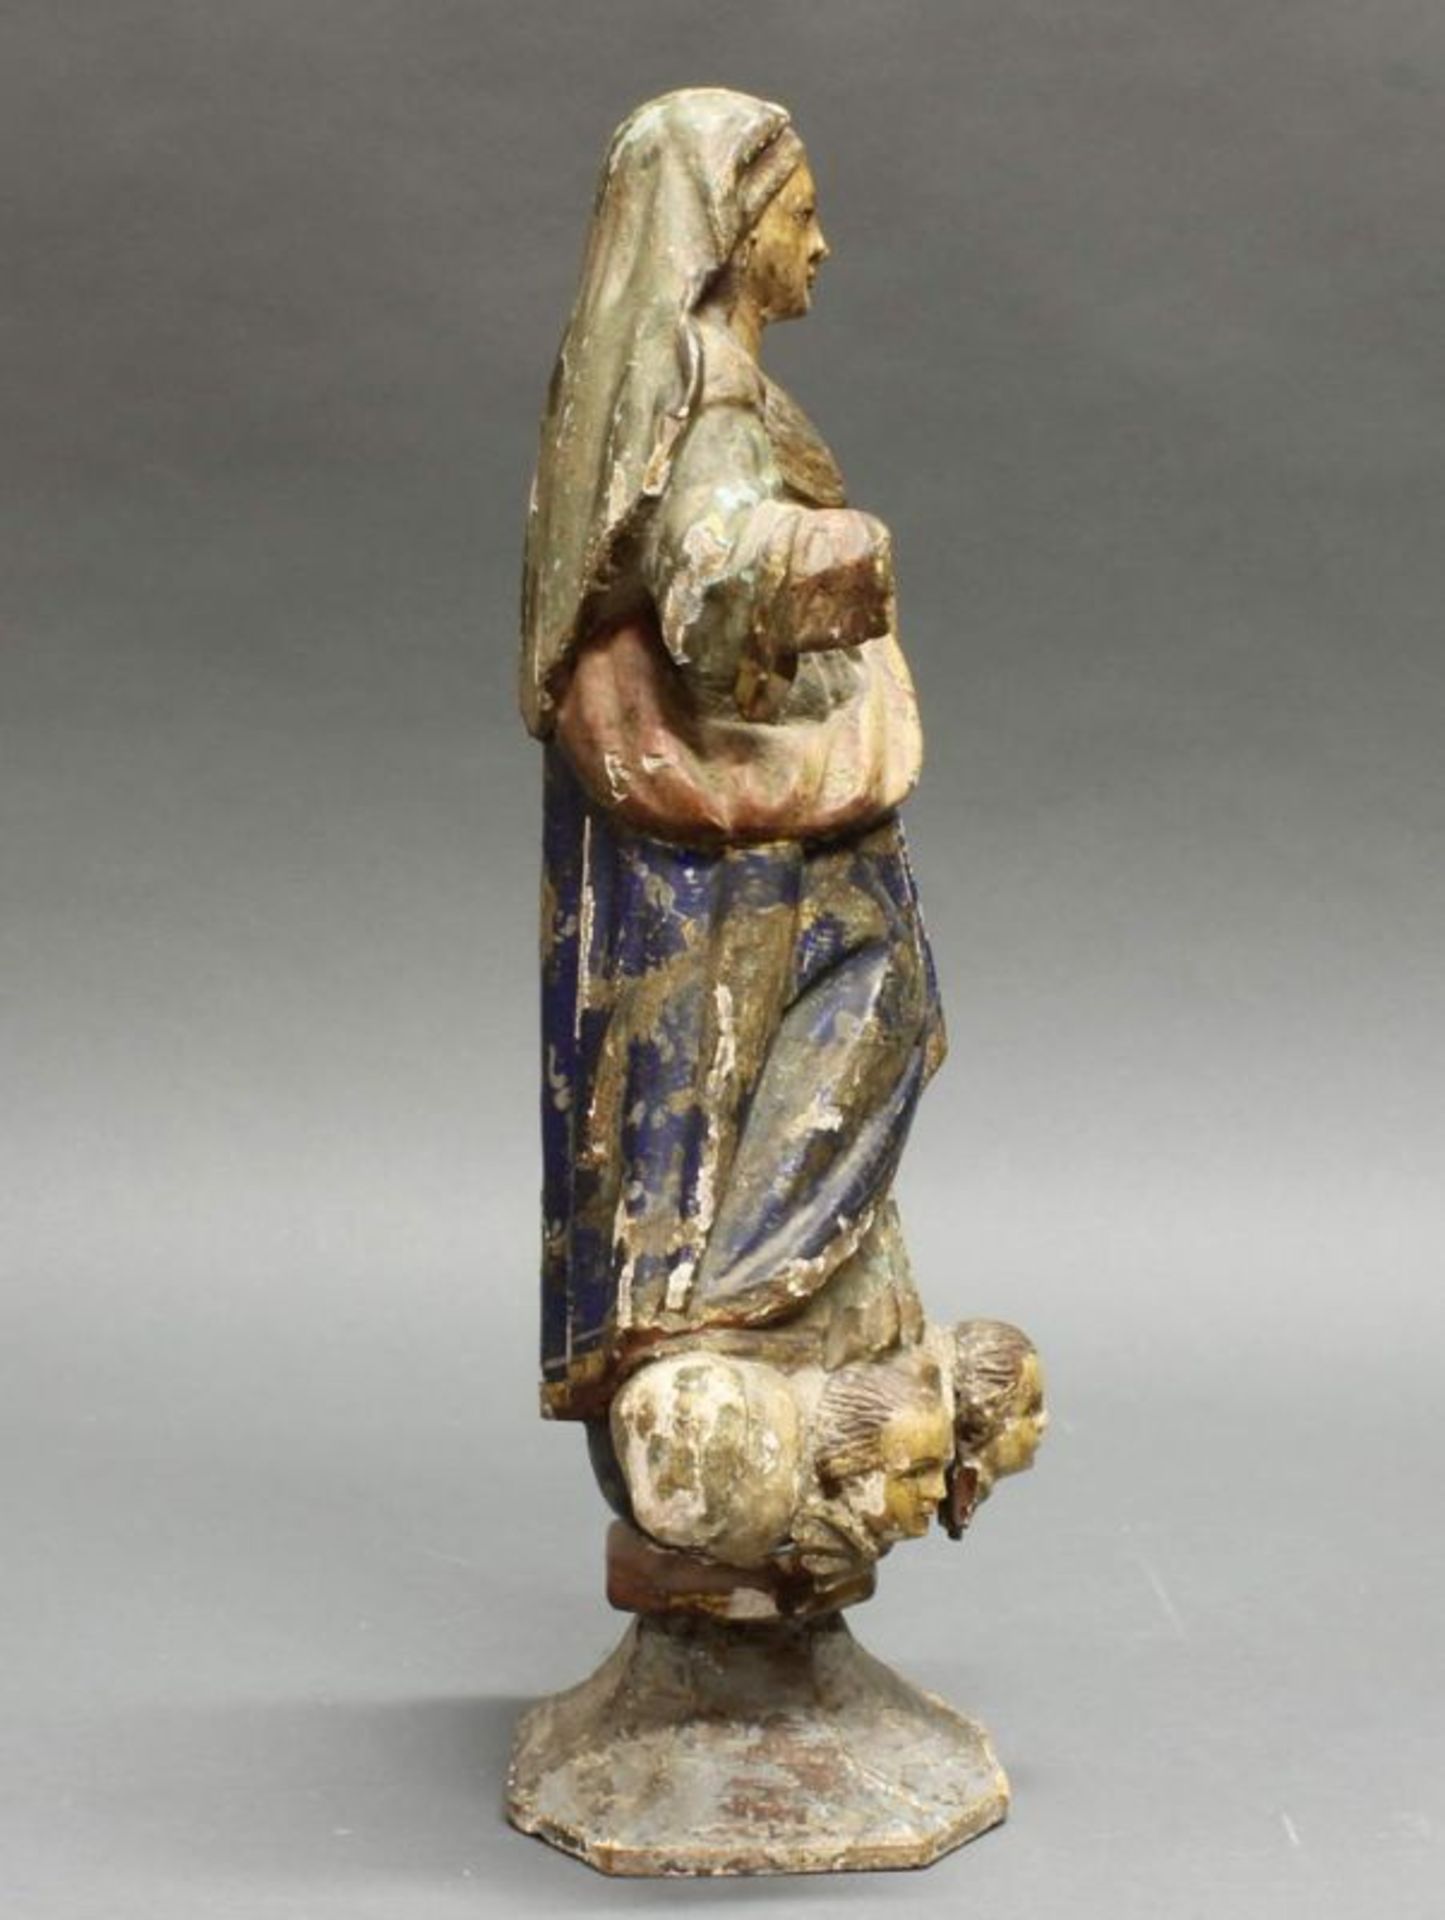 Skulptur, Holz geschnitzt, "Madonna", Südamerika, Christuskind lose anbei, Reste alter Fassung, - Image 6 of 8